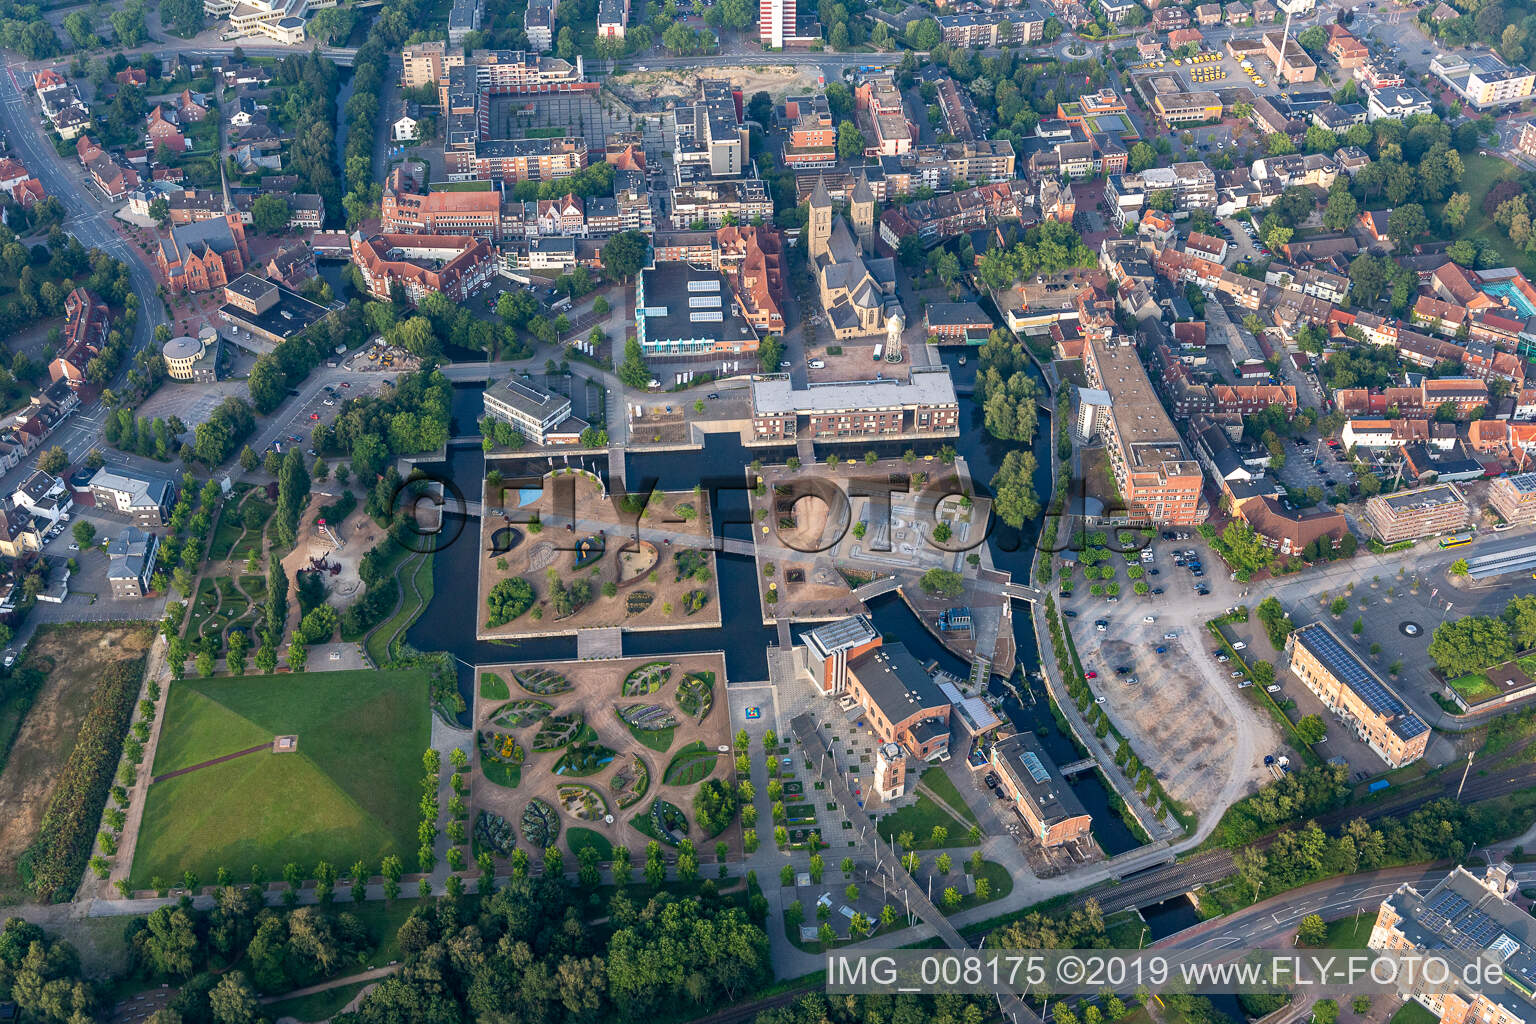 Aerial photograpy of LAGA, rock'n'pop museum in Gronau in the state North Rhine-Westphalia, Germany